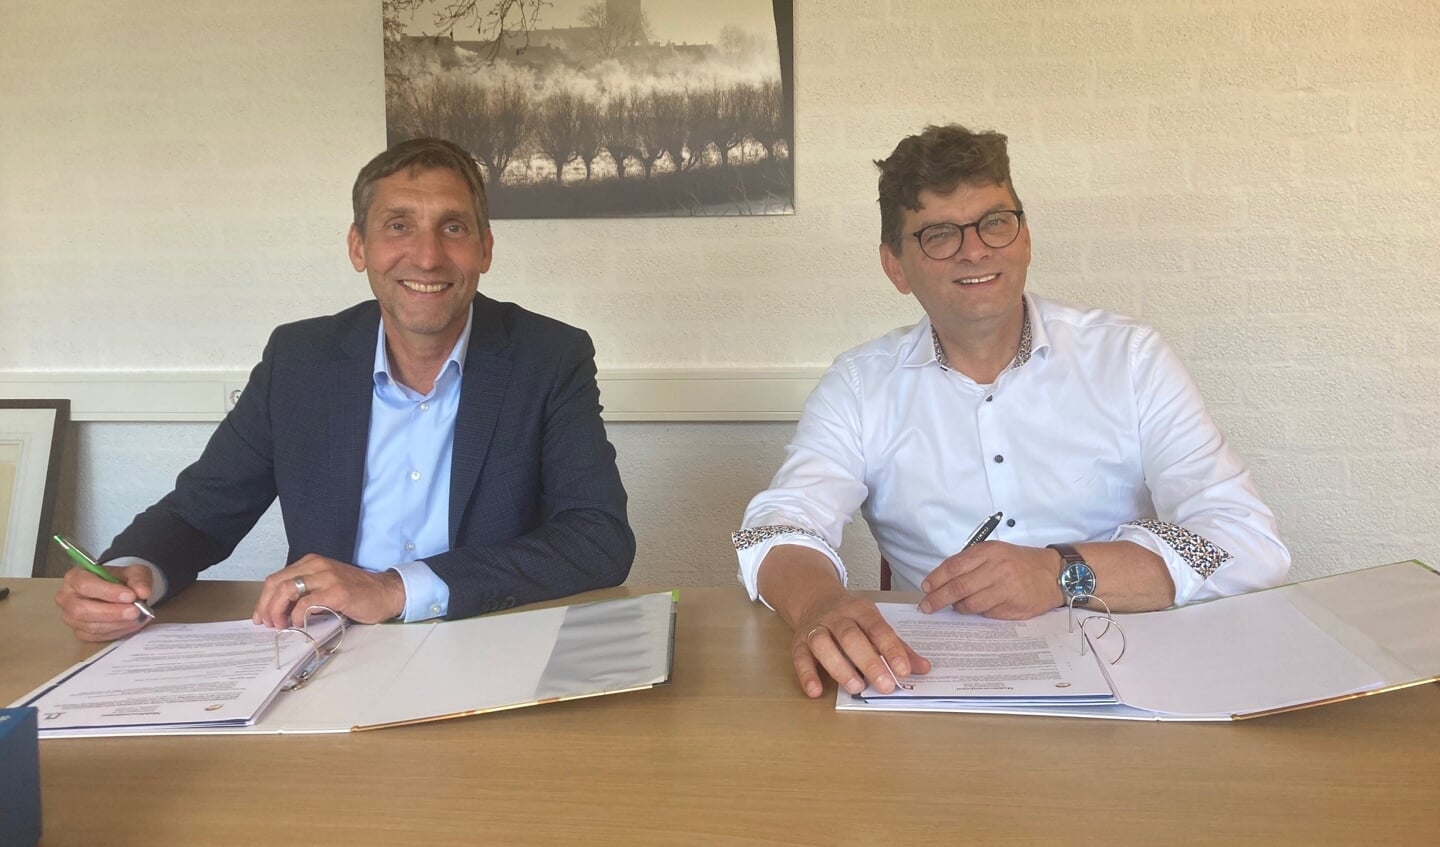 De overeenkomst voor de realisatie is ondertekend door Perry van Leeuwen, commercieel directeur bij BAM Wonen en Ed de Groot, directeur-bestuurder van LEKSTEDEwonen.